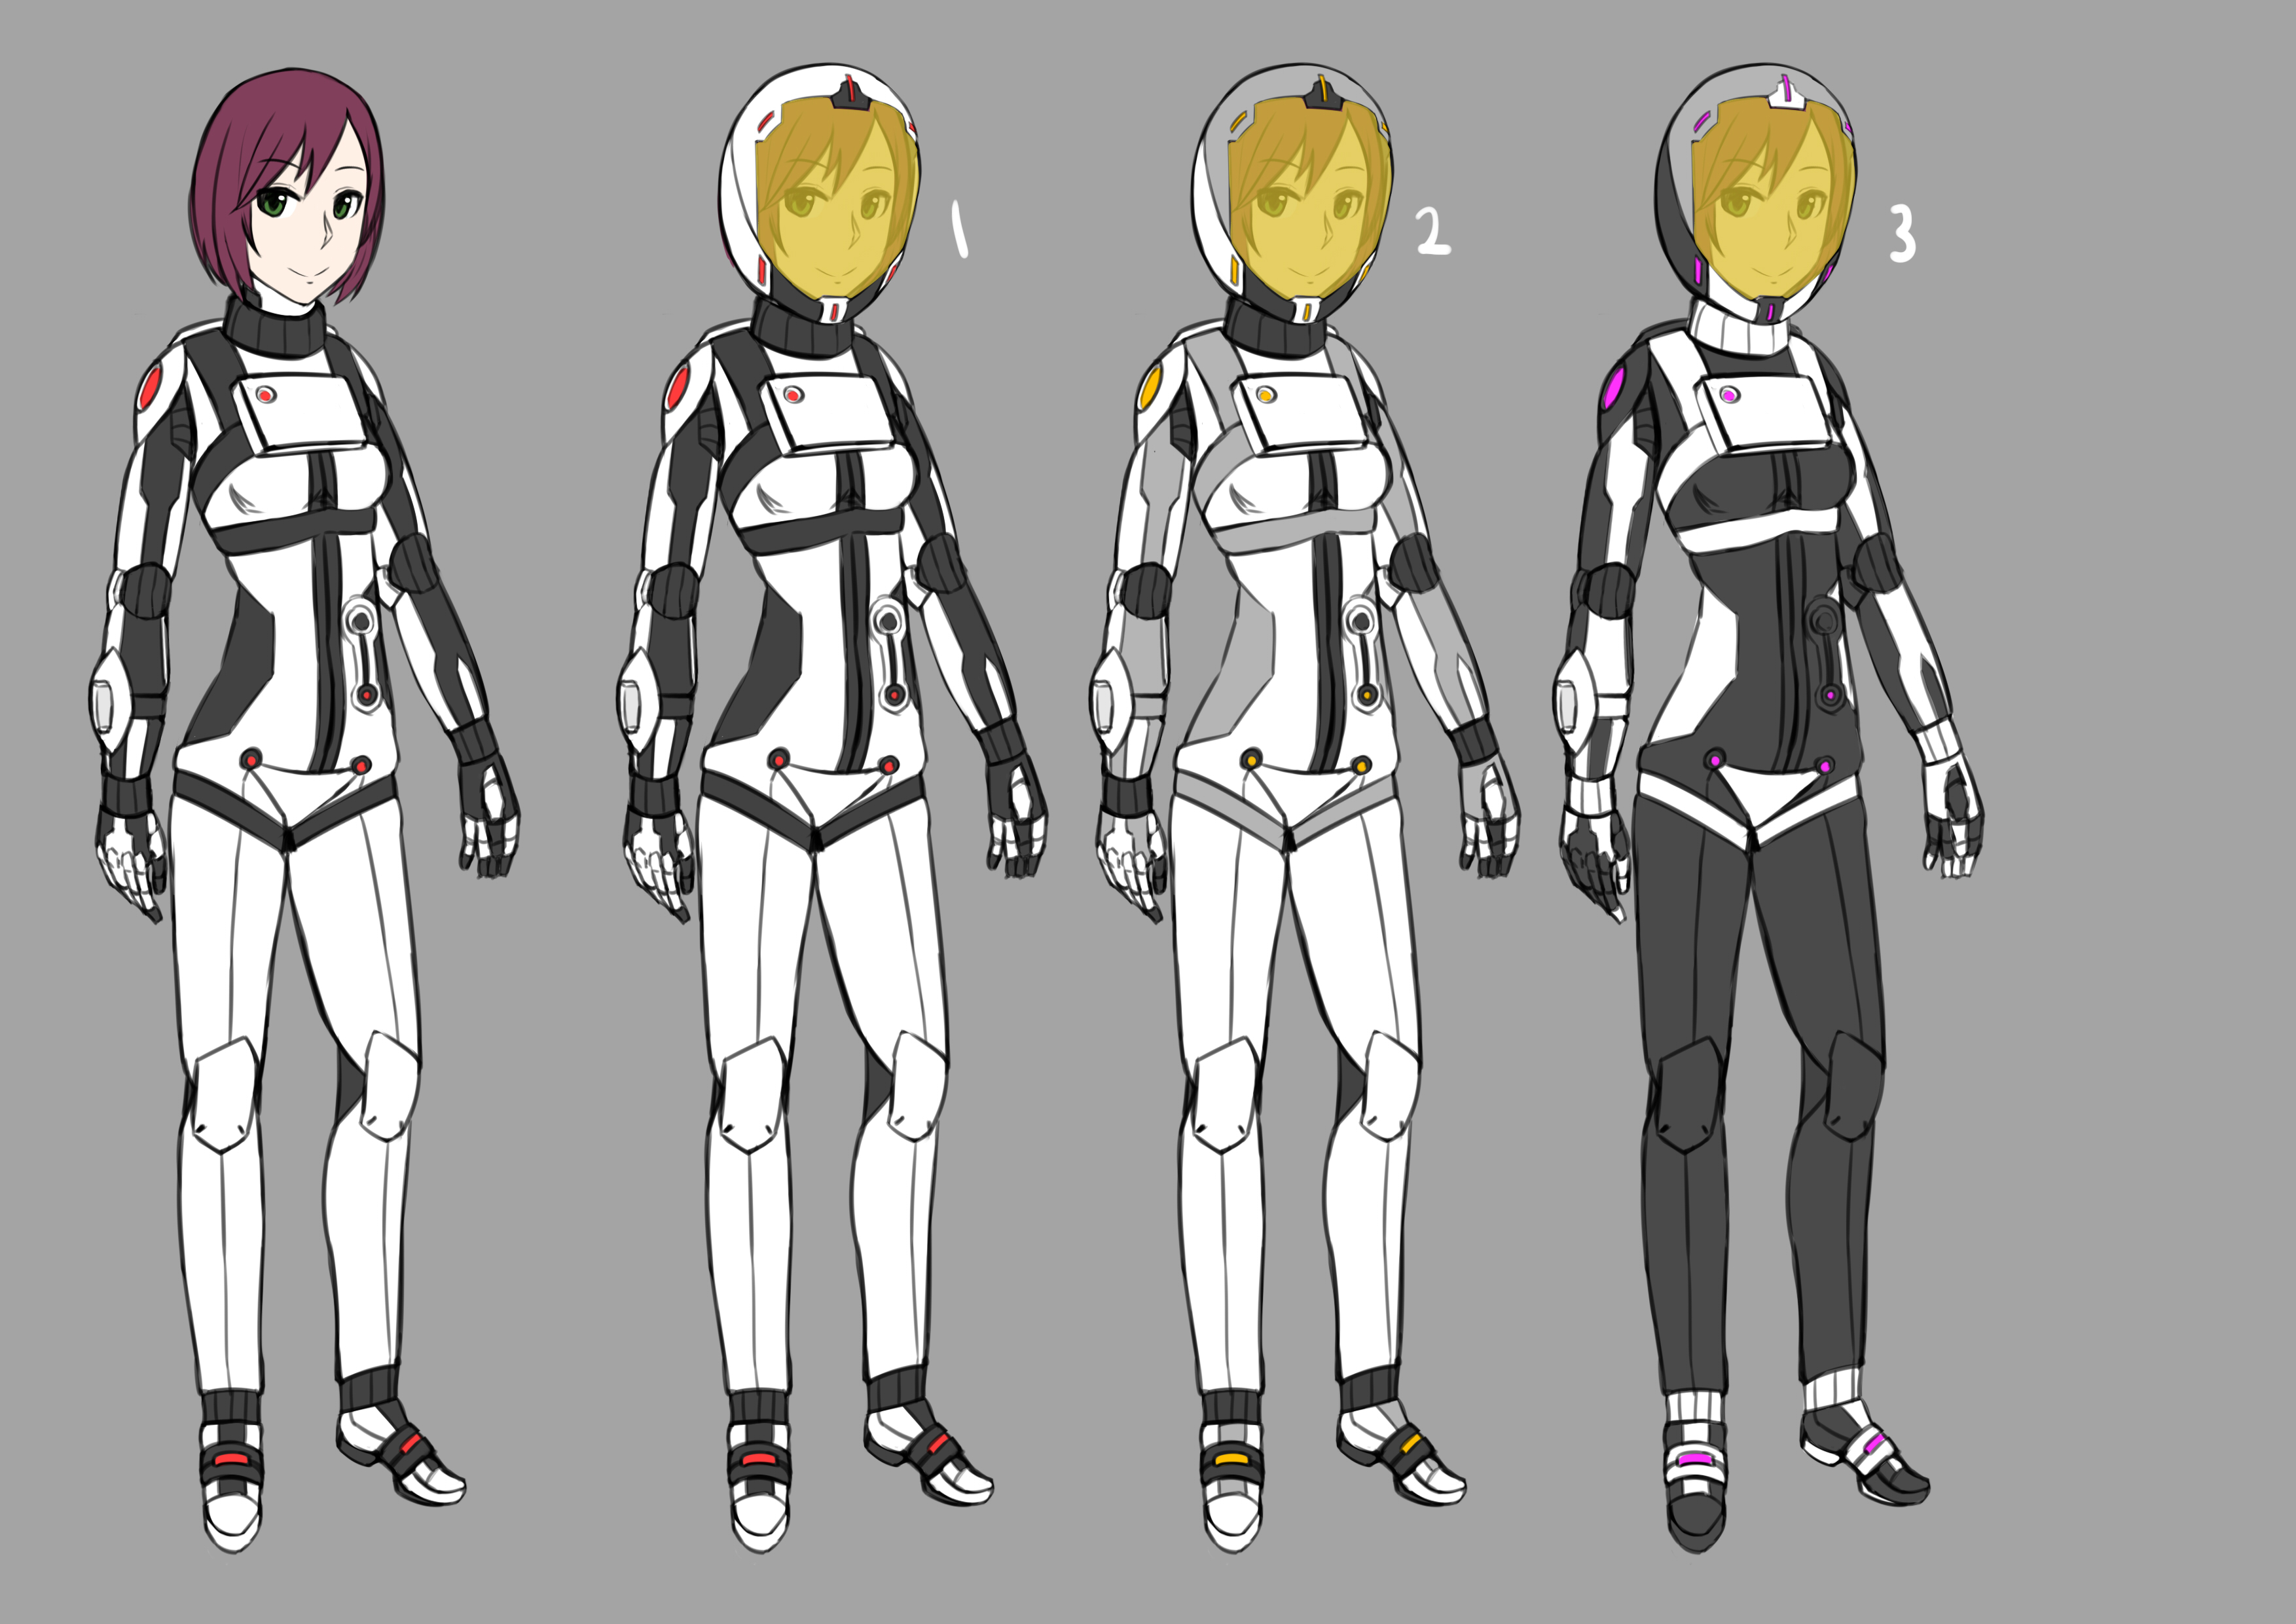 Space suit designs – Salmon Draws (GGSalmon)